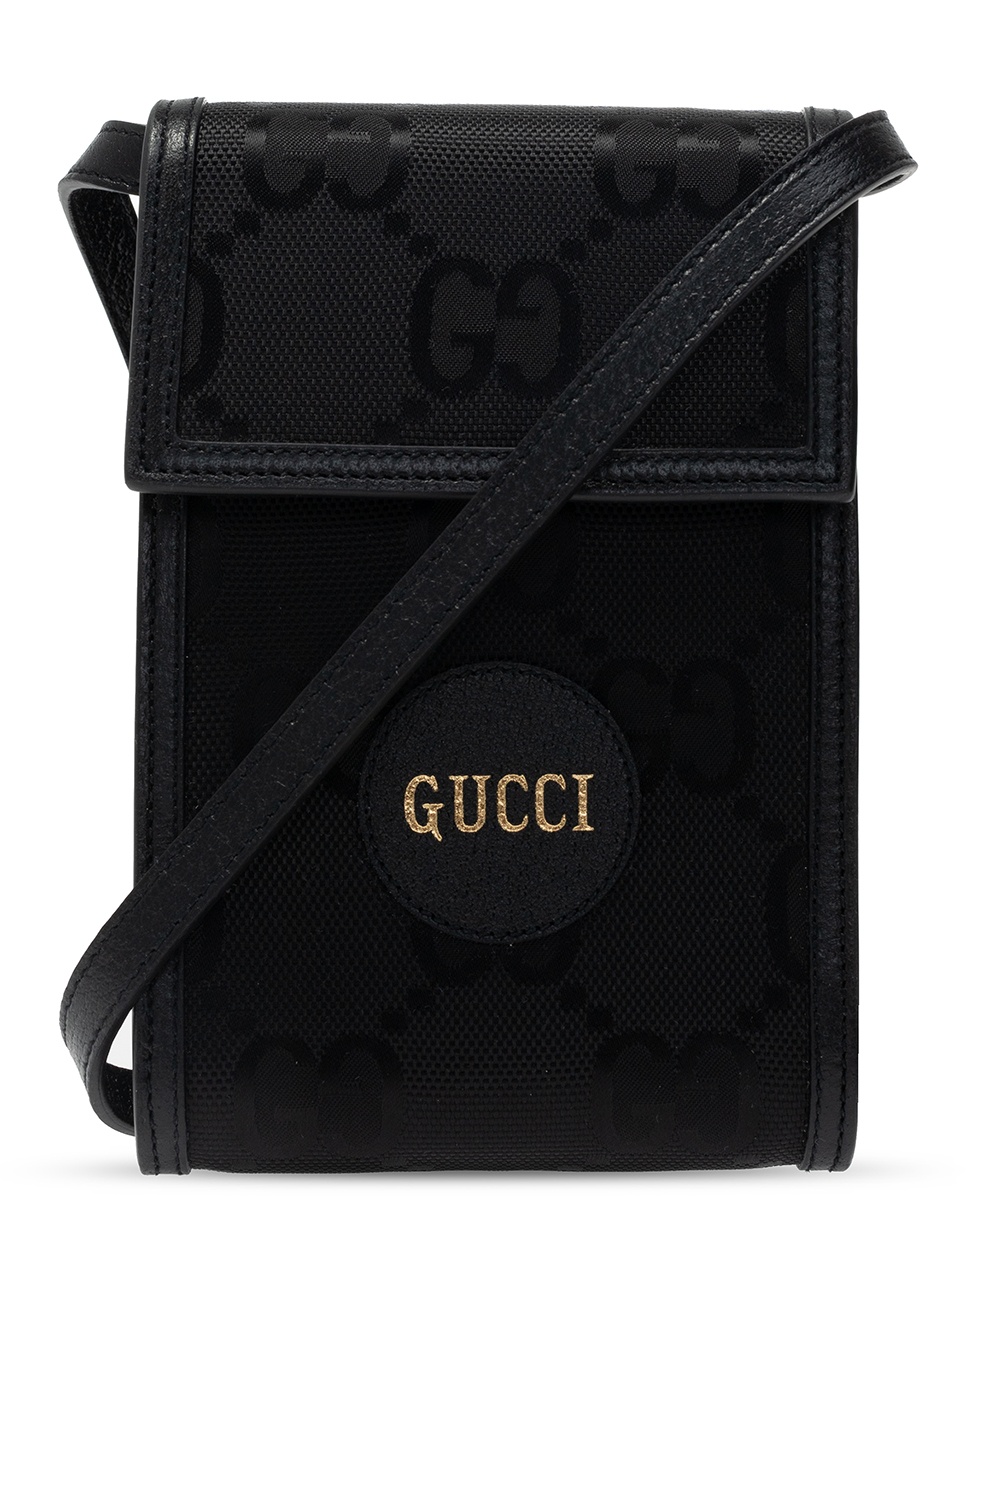 Gucci gucci 1973 handbag in black grained leather